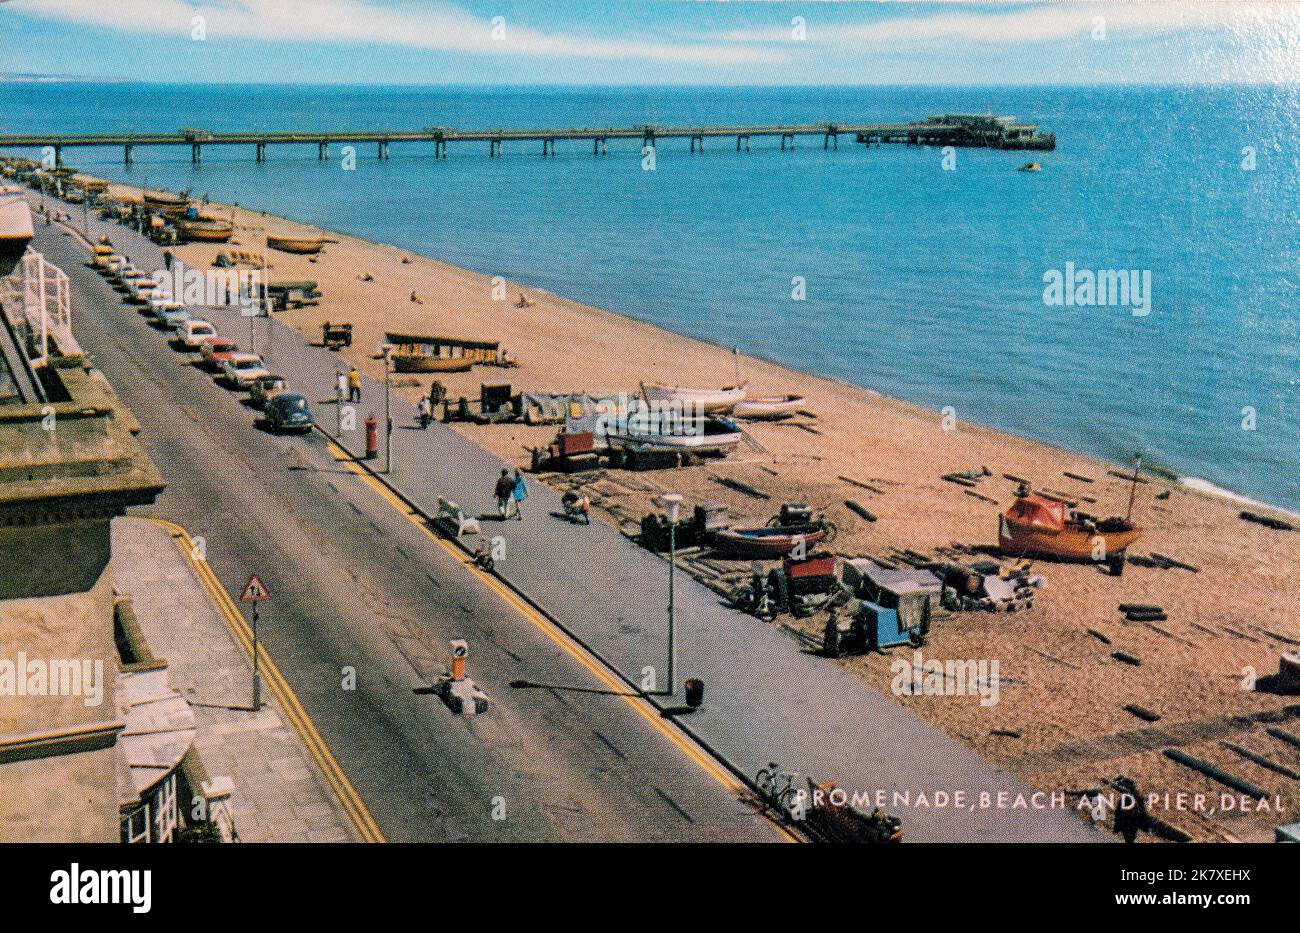 Vista panoramica degli anni '60 della Promenade, della spiaggia e del molo nella città costiera di Deal, Kent, Inghilterra, Regno Unito Foto Stock